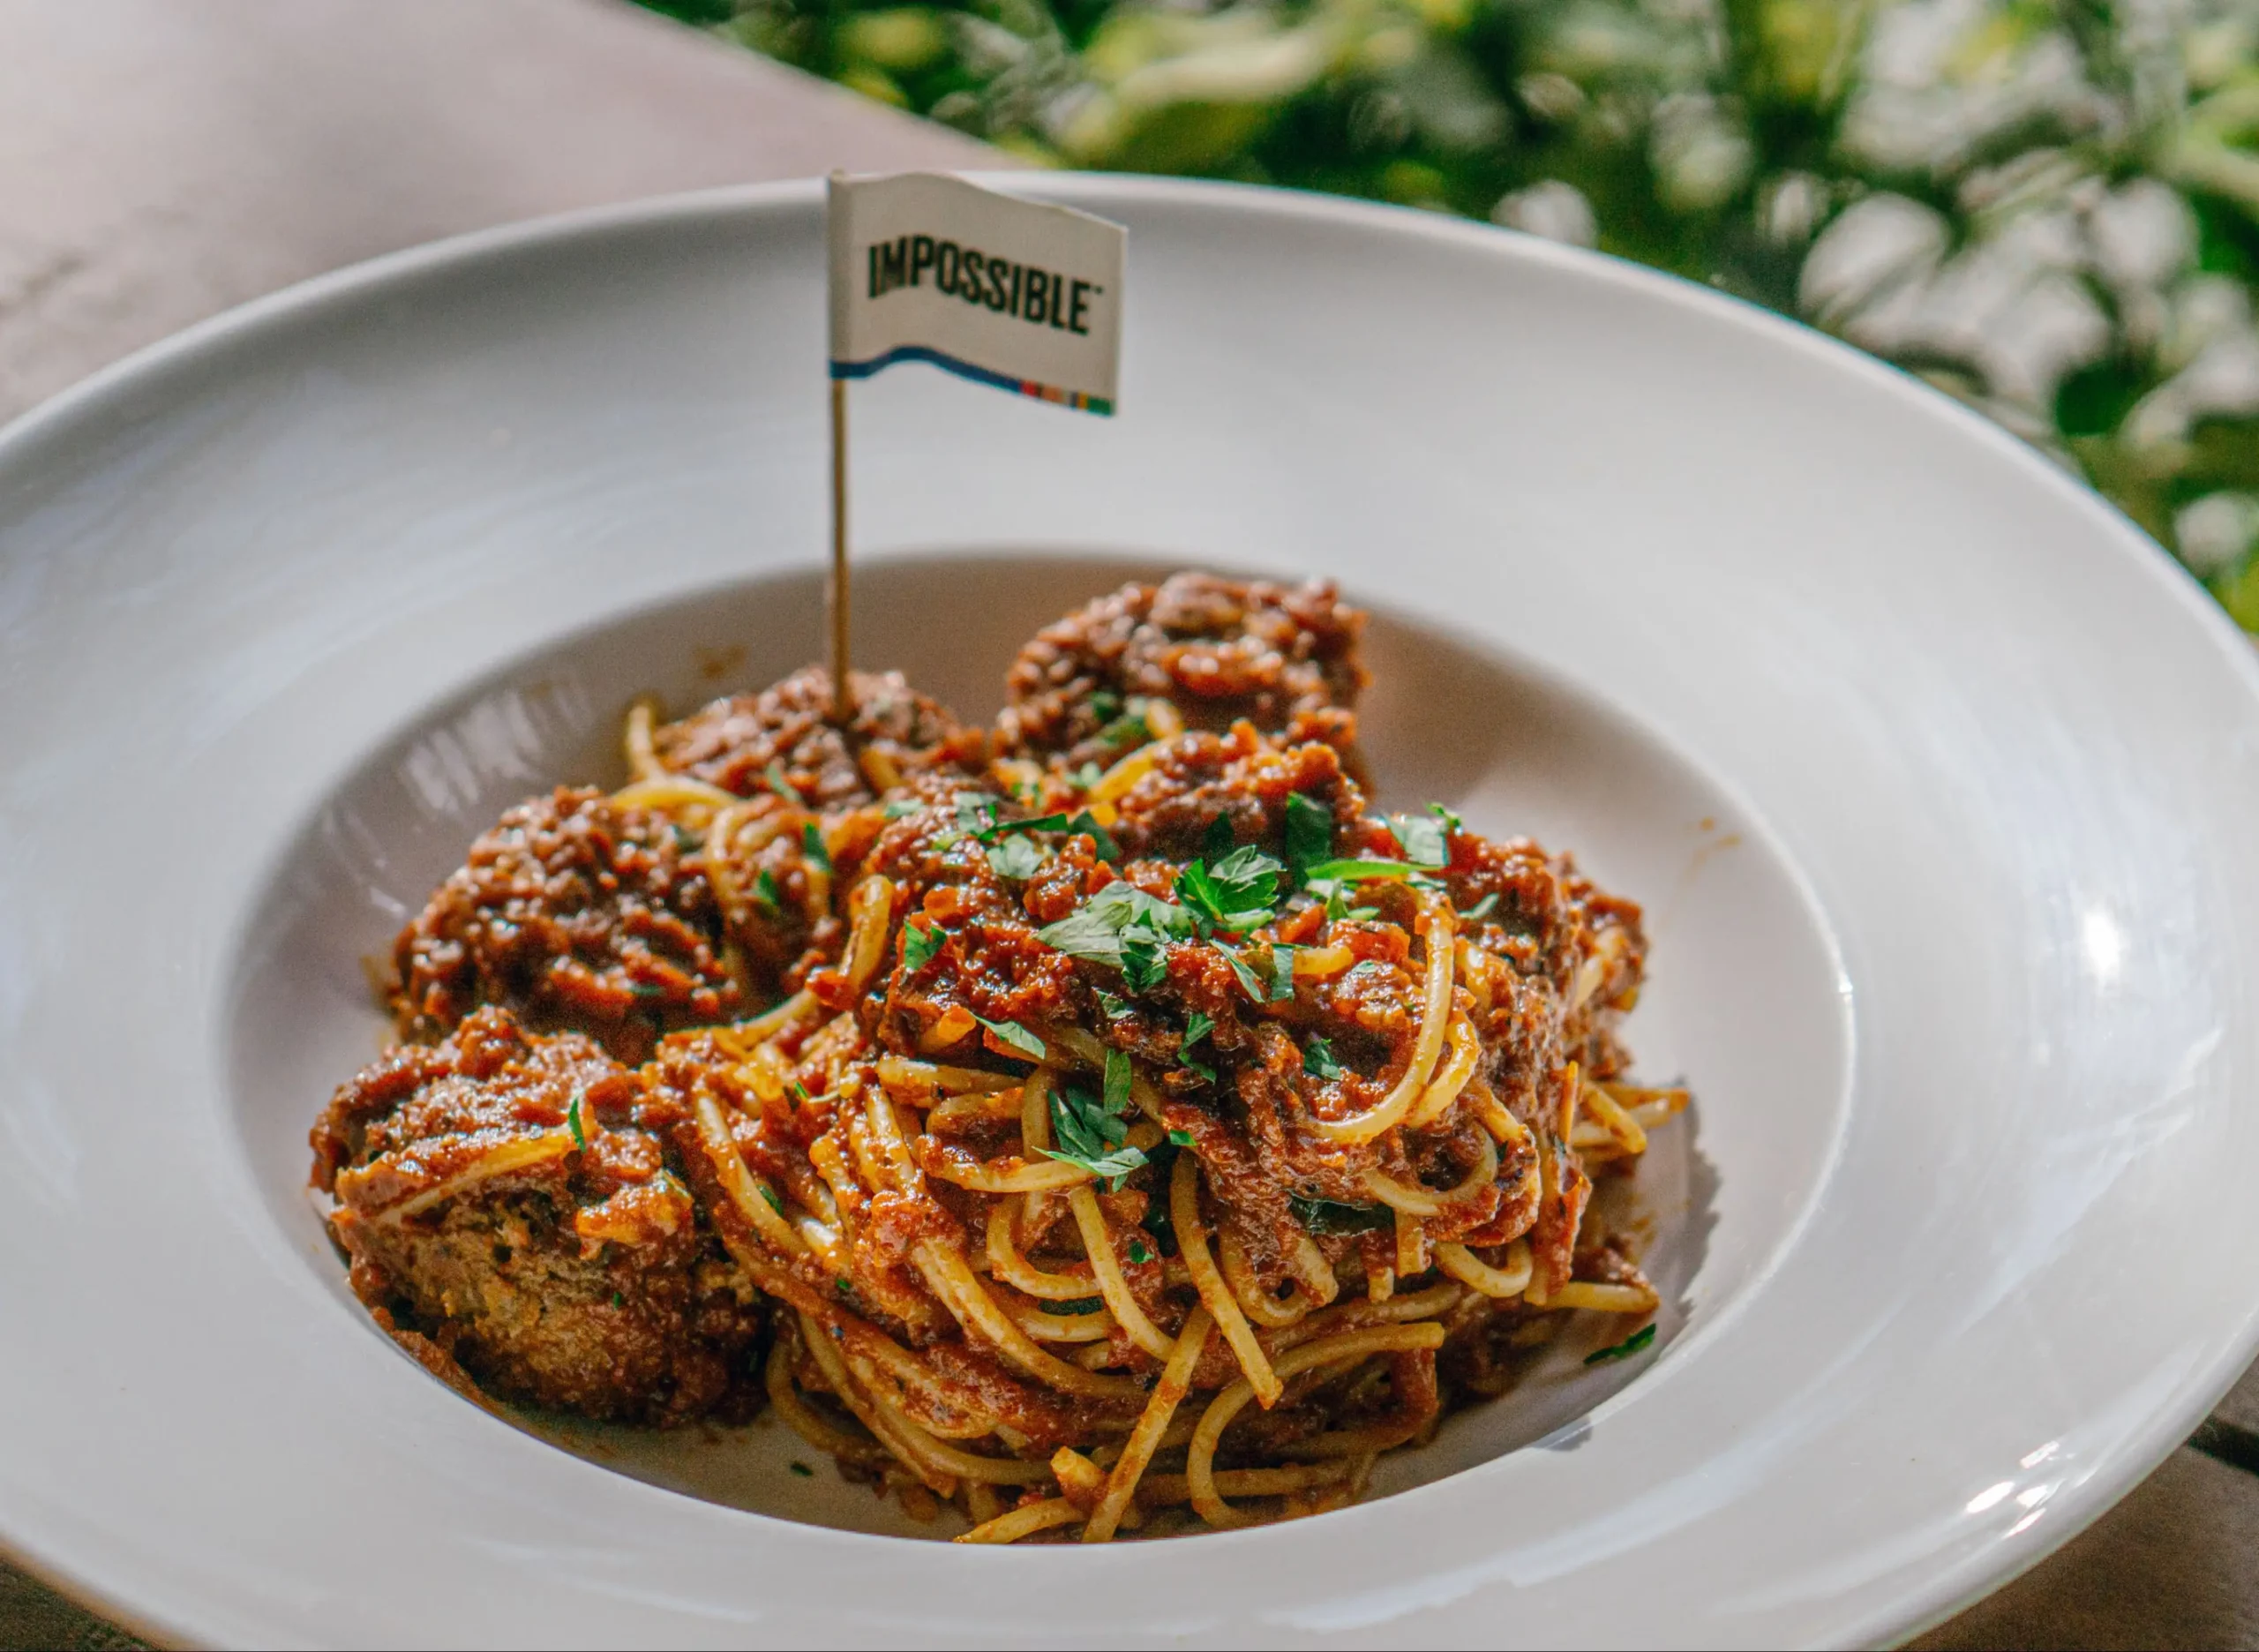 Impossible™ Meatball Spaghetti